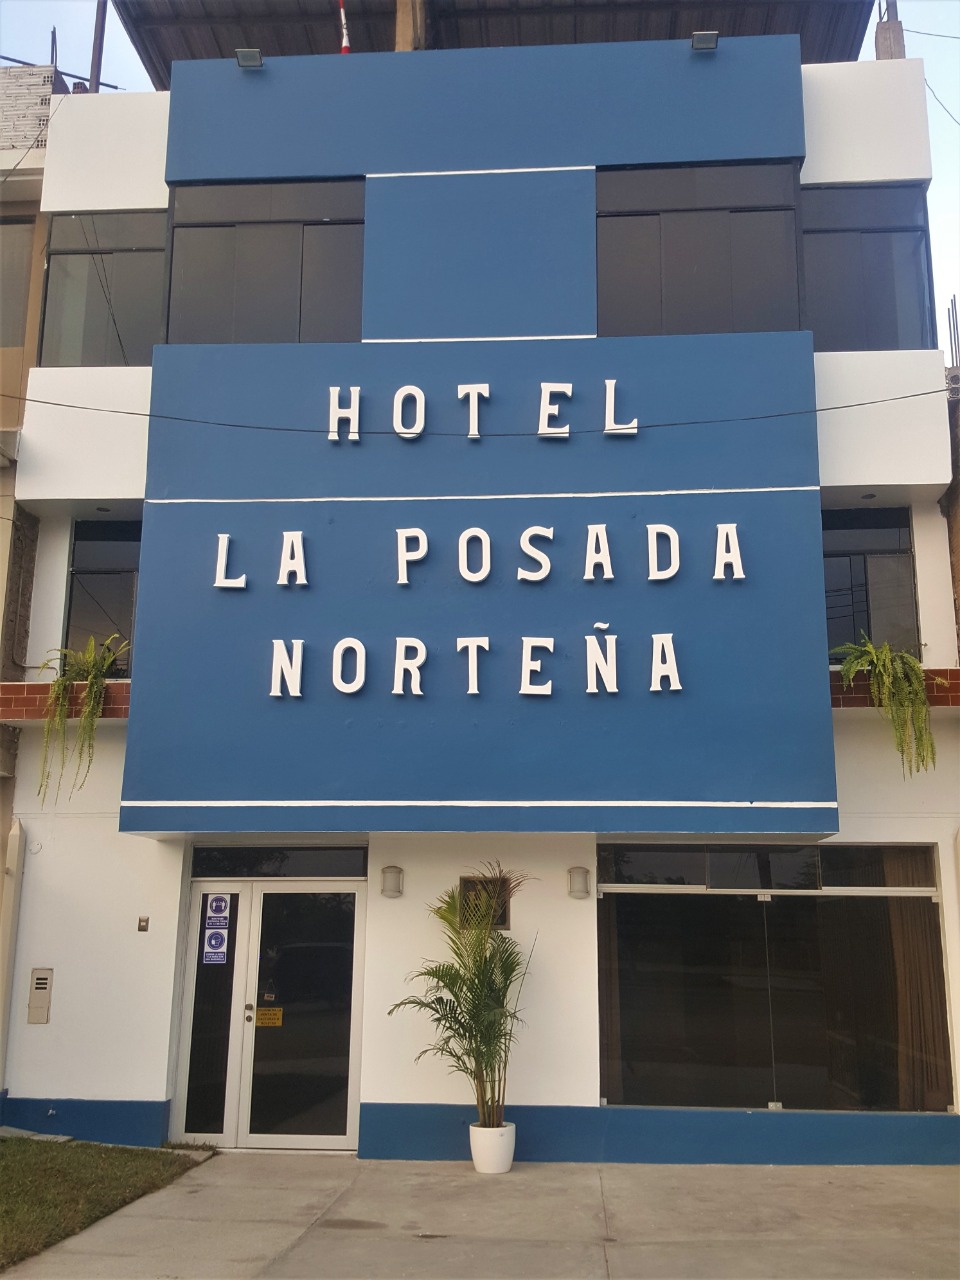 HOTEL LA POSADA NORTEÑA